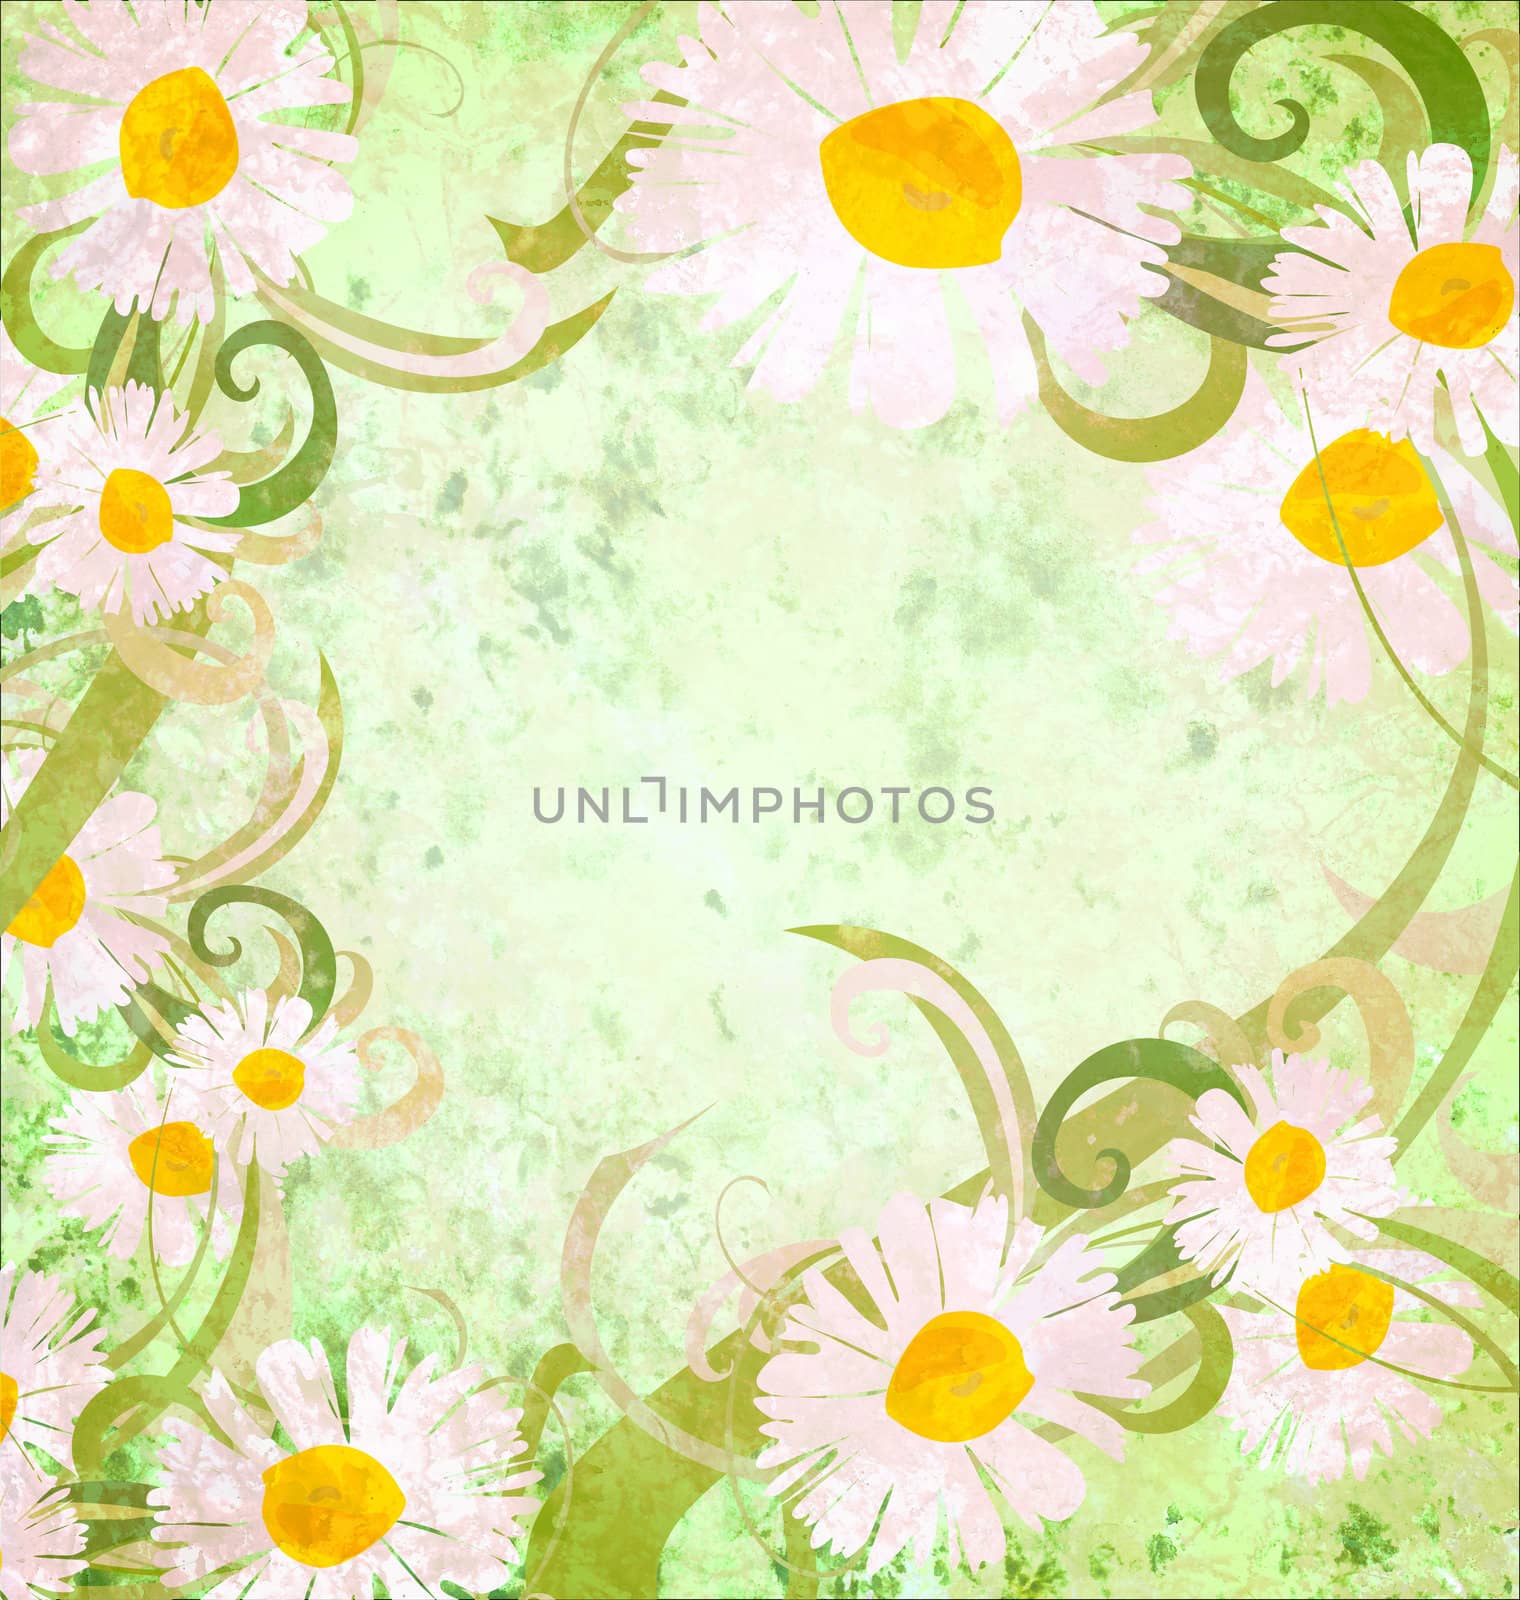 daisy frame grunge background vintage style nature image